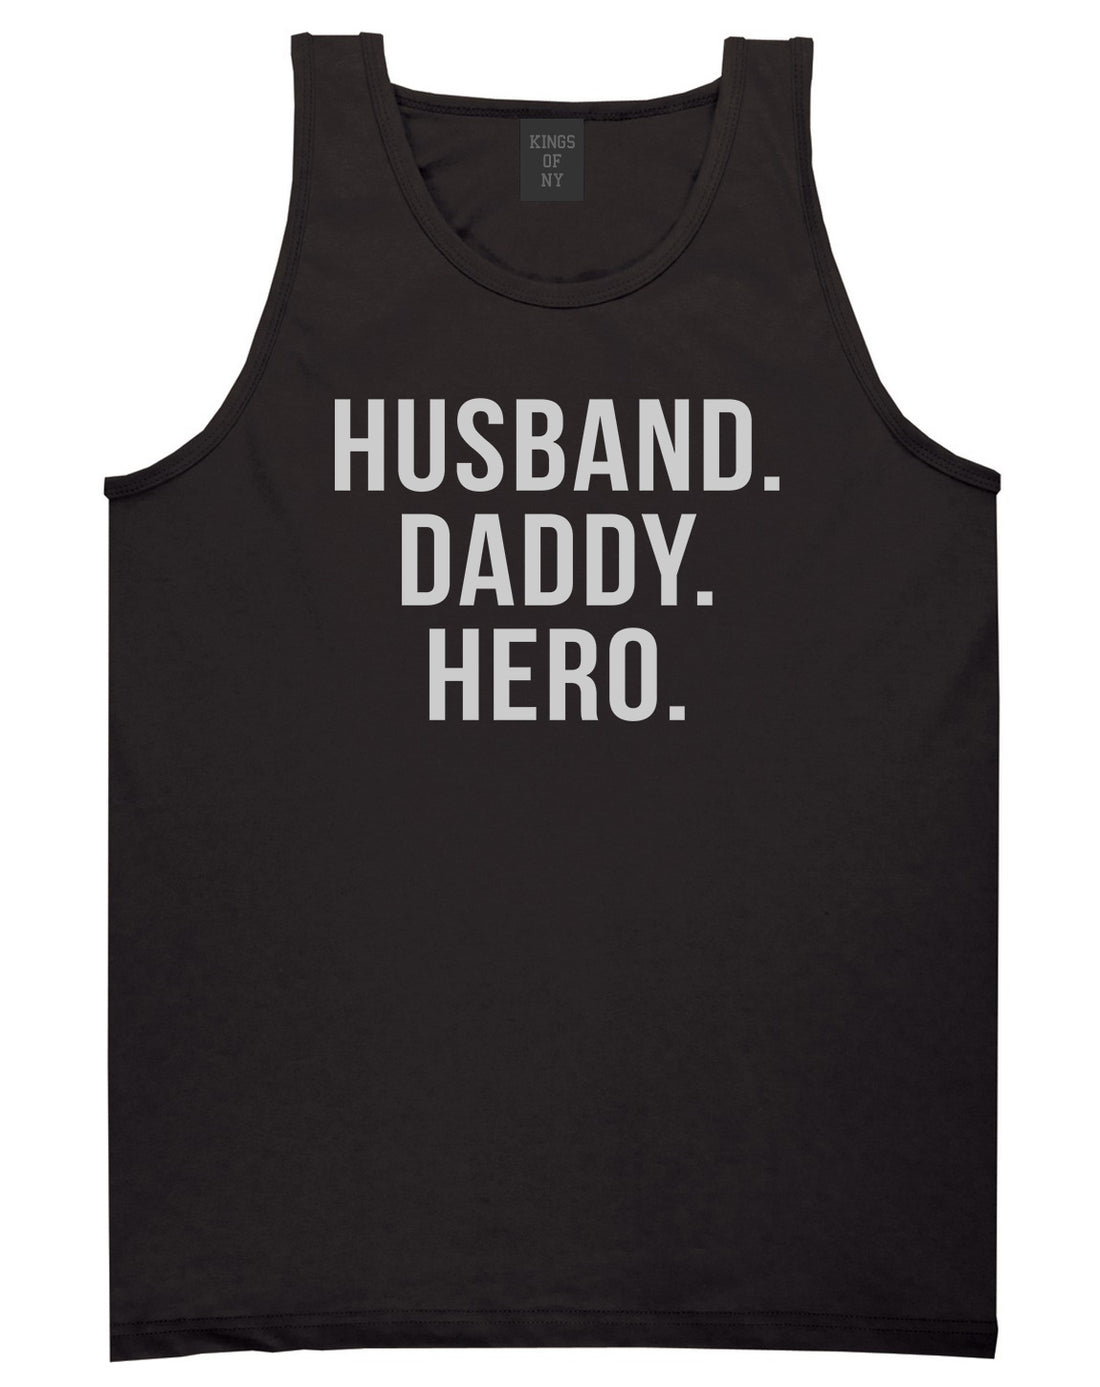 Husband Dad Hero Mens Tank Top Shirt Black by Kings Of NY